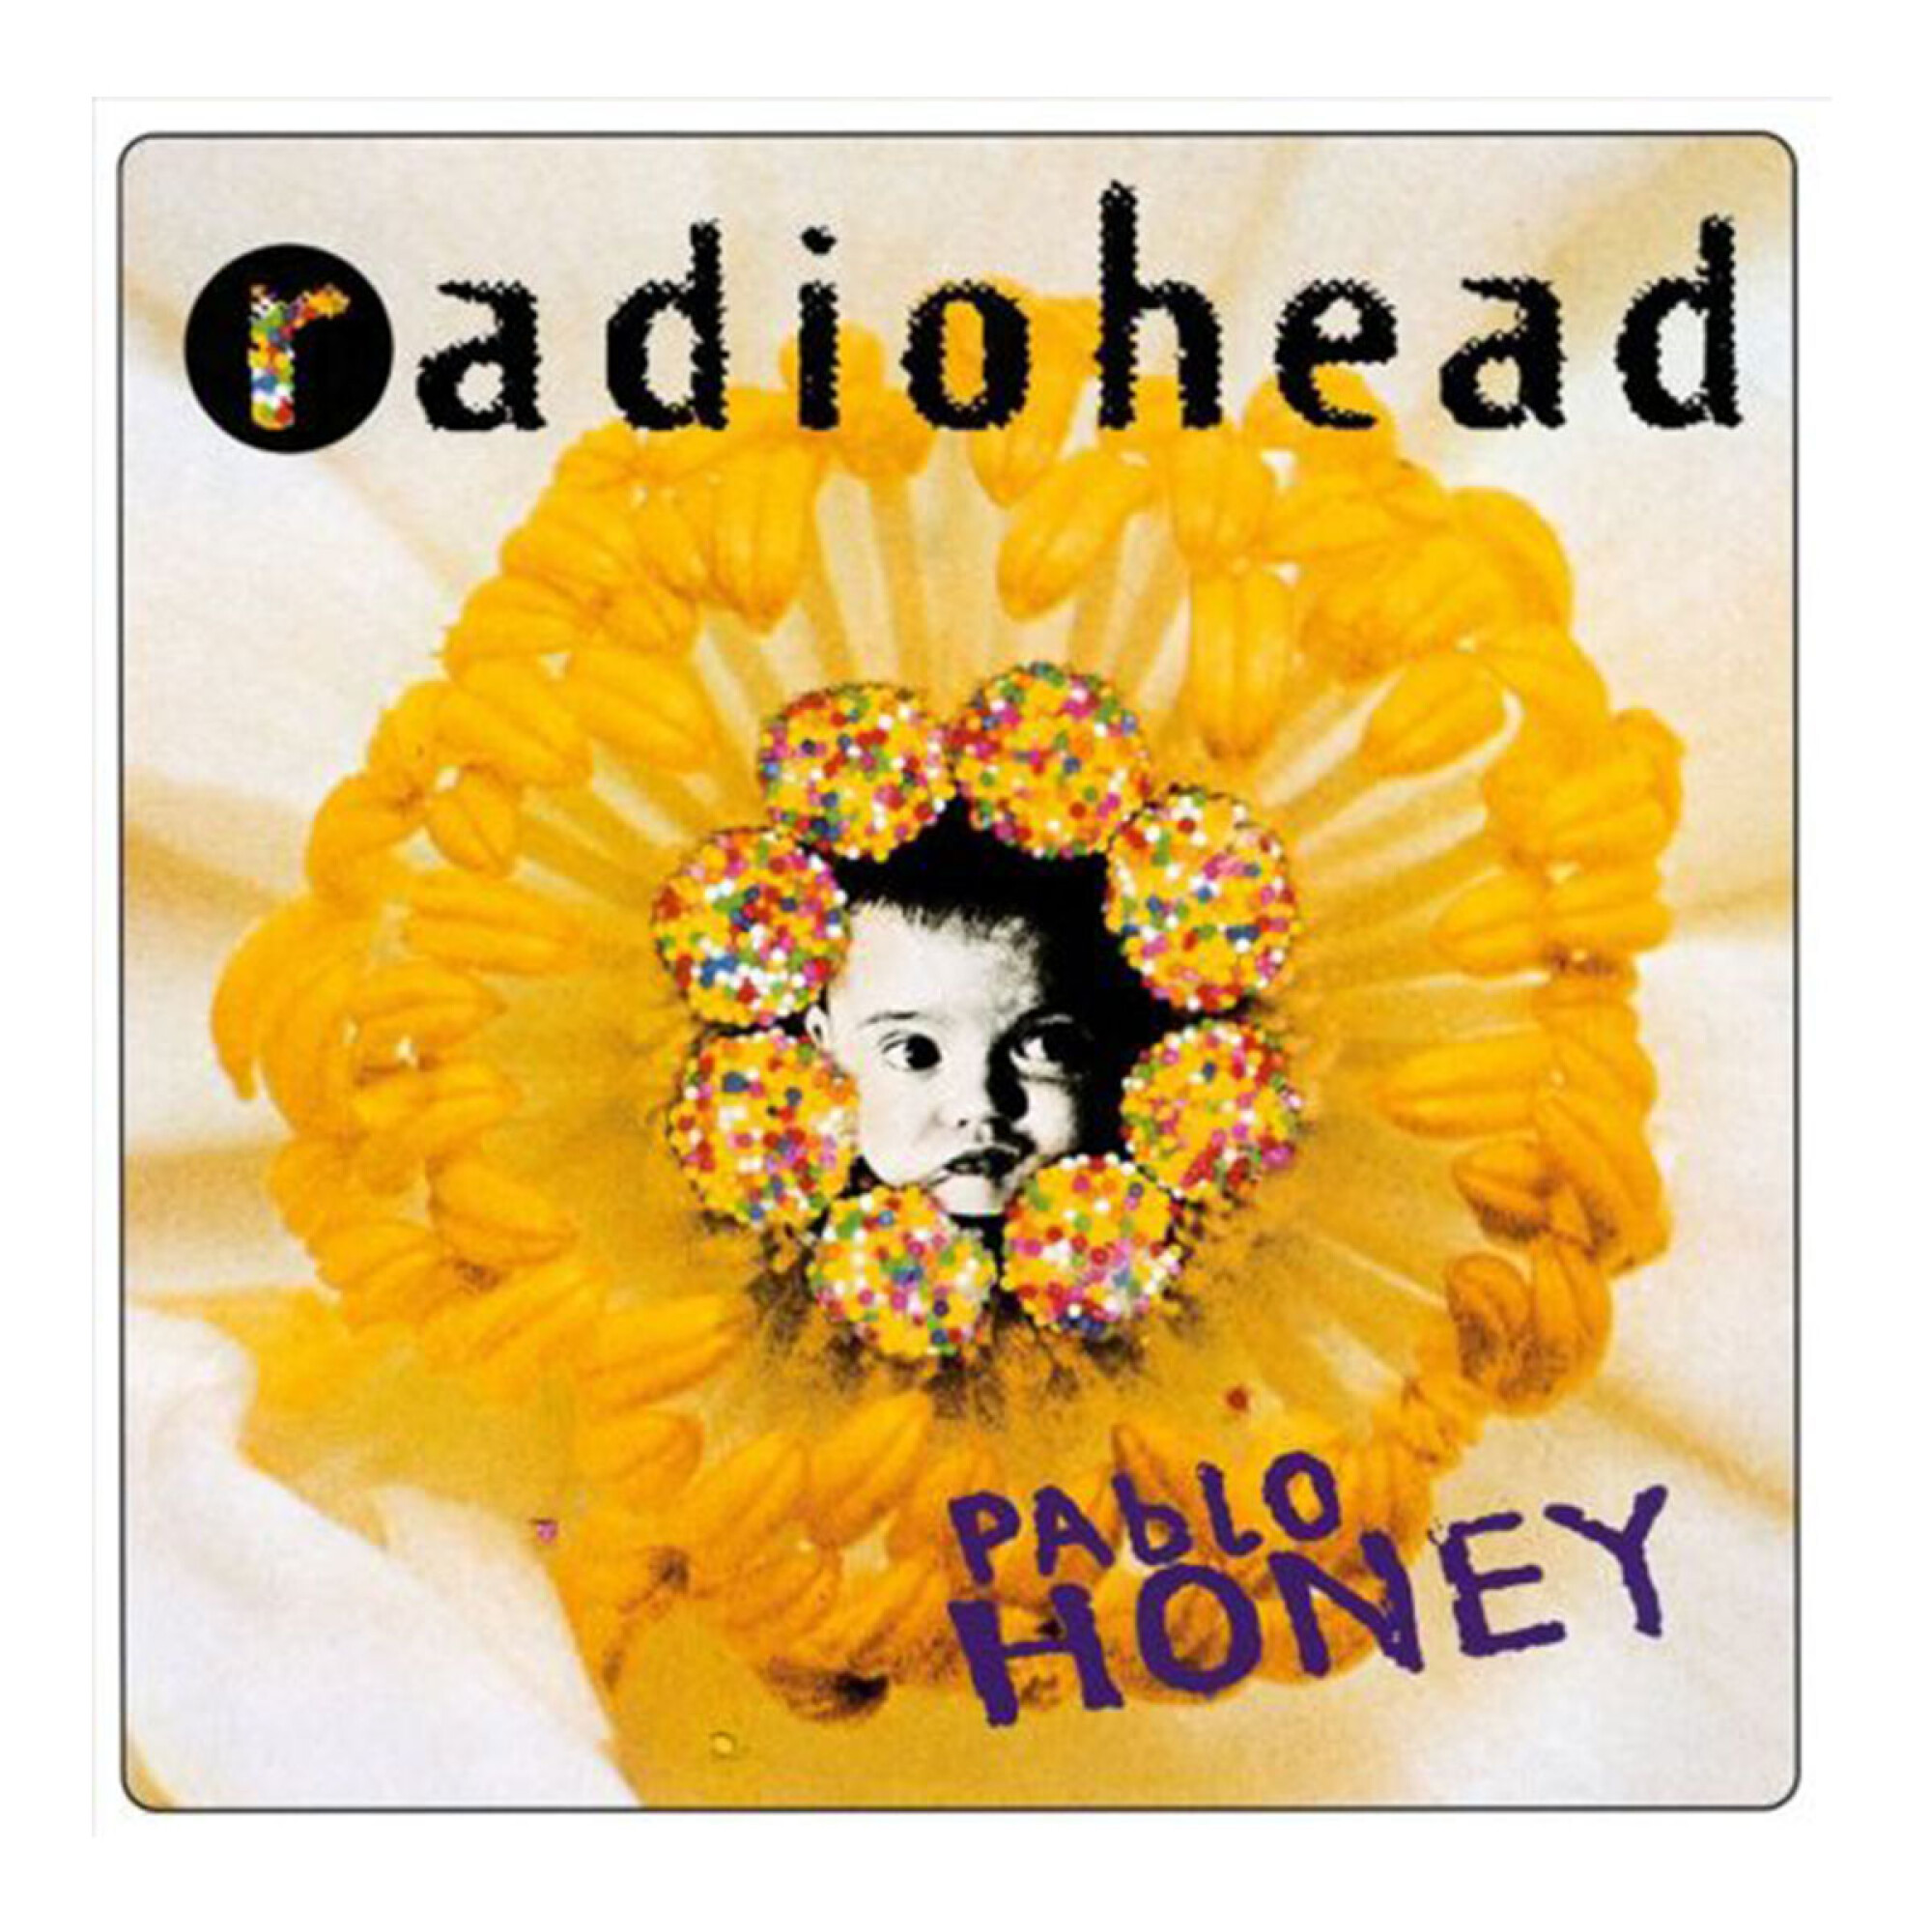 Radiohead-in Rainbows - Vinilo — Palacio de la Música